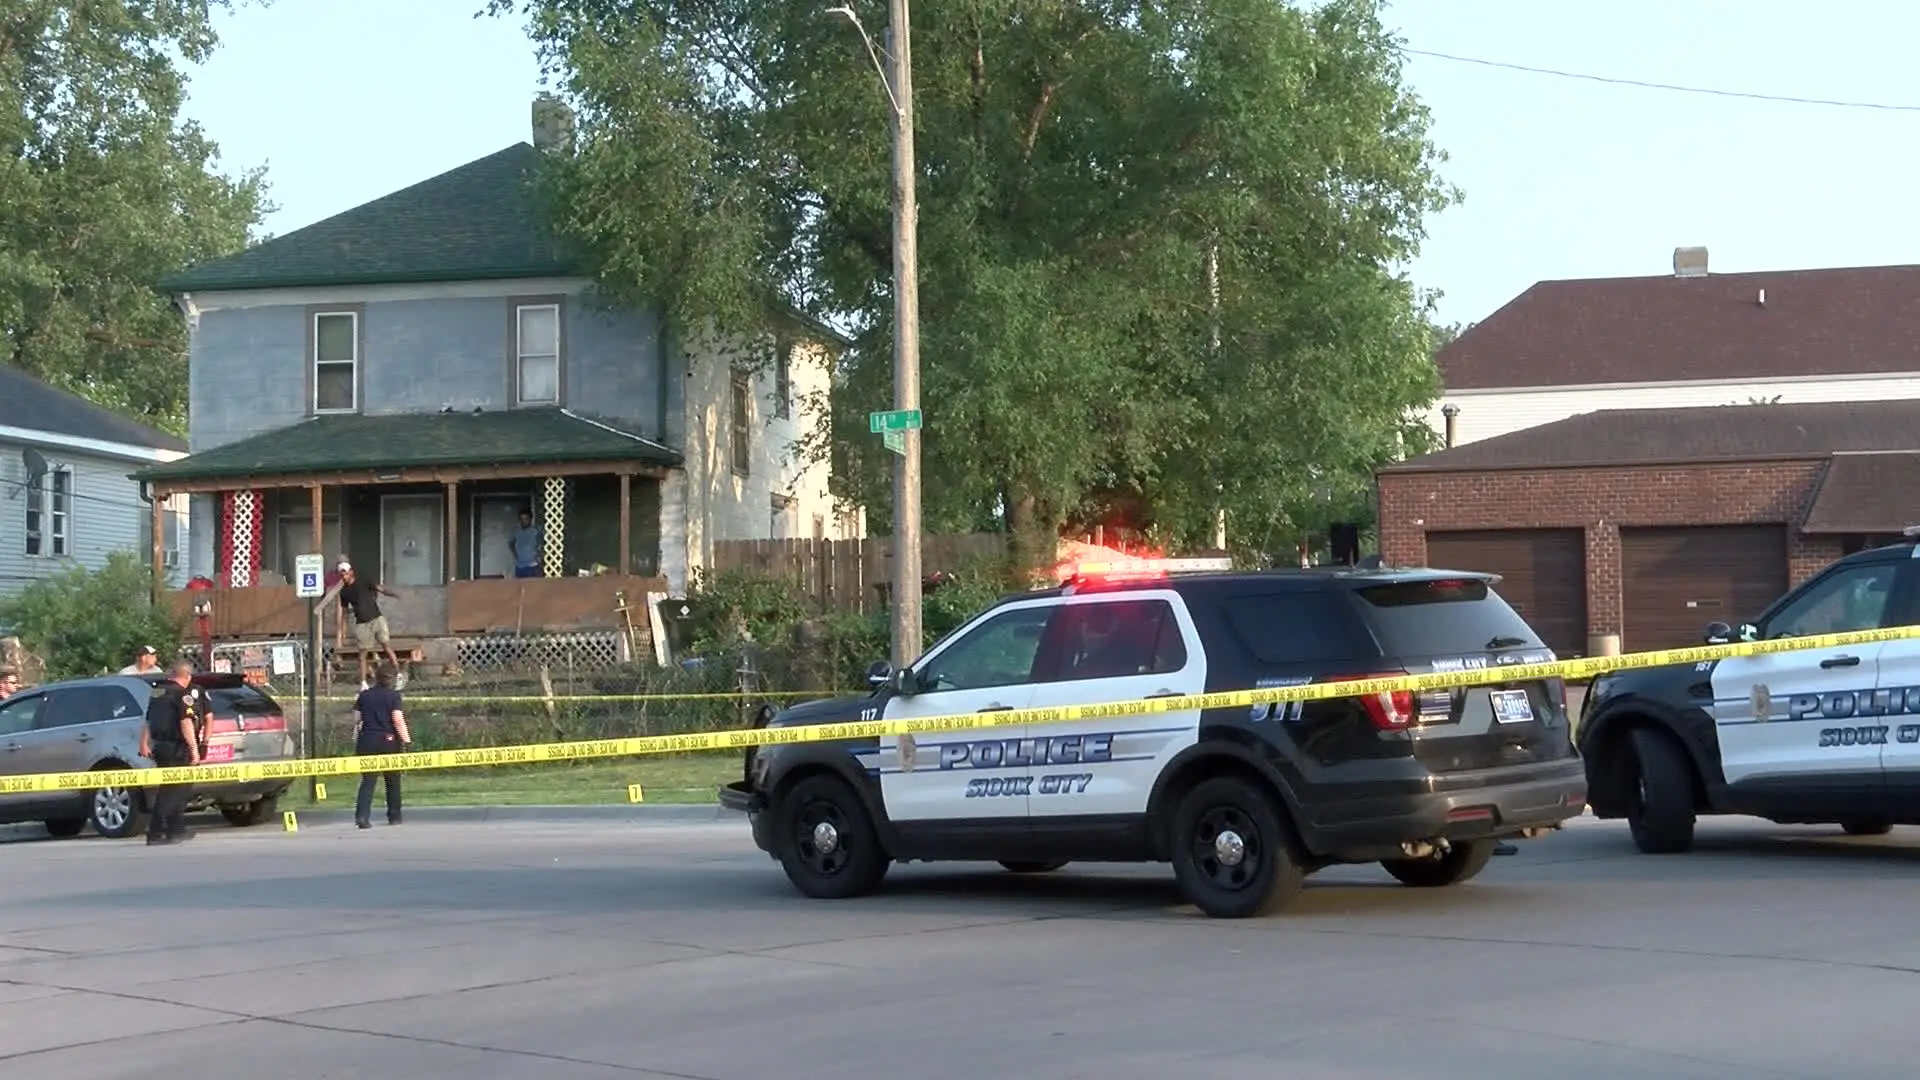 Sospechoso acusado de disparar y matar a hombre de Sioux City arrestado: SCPD.